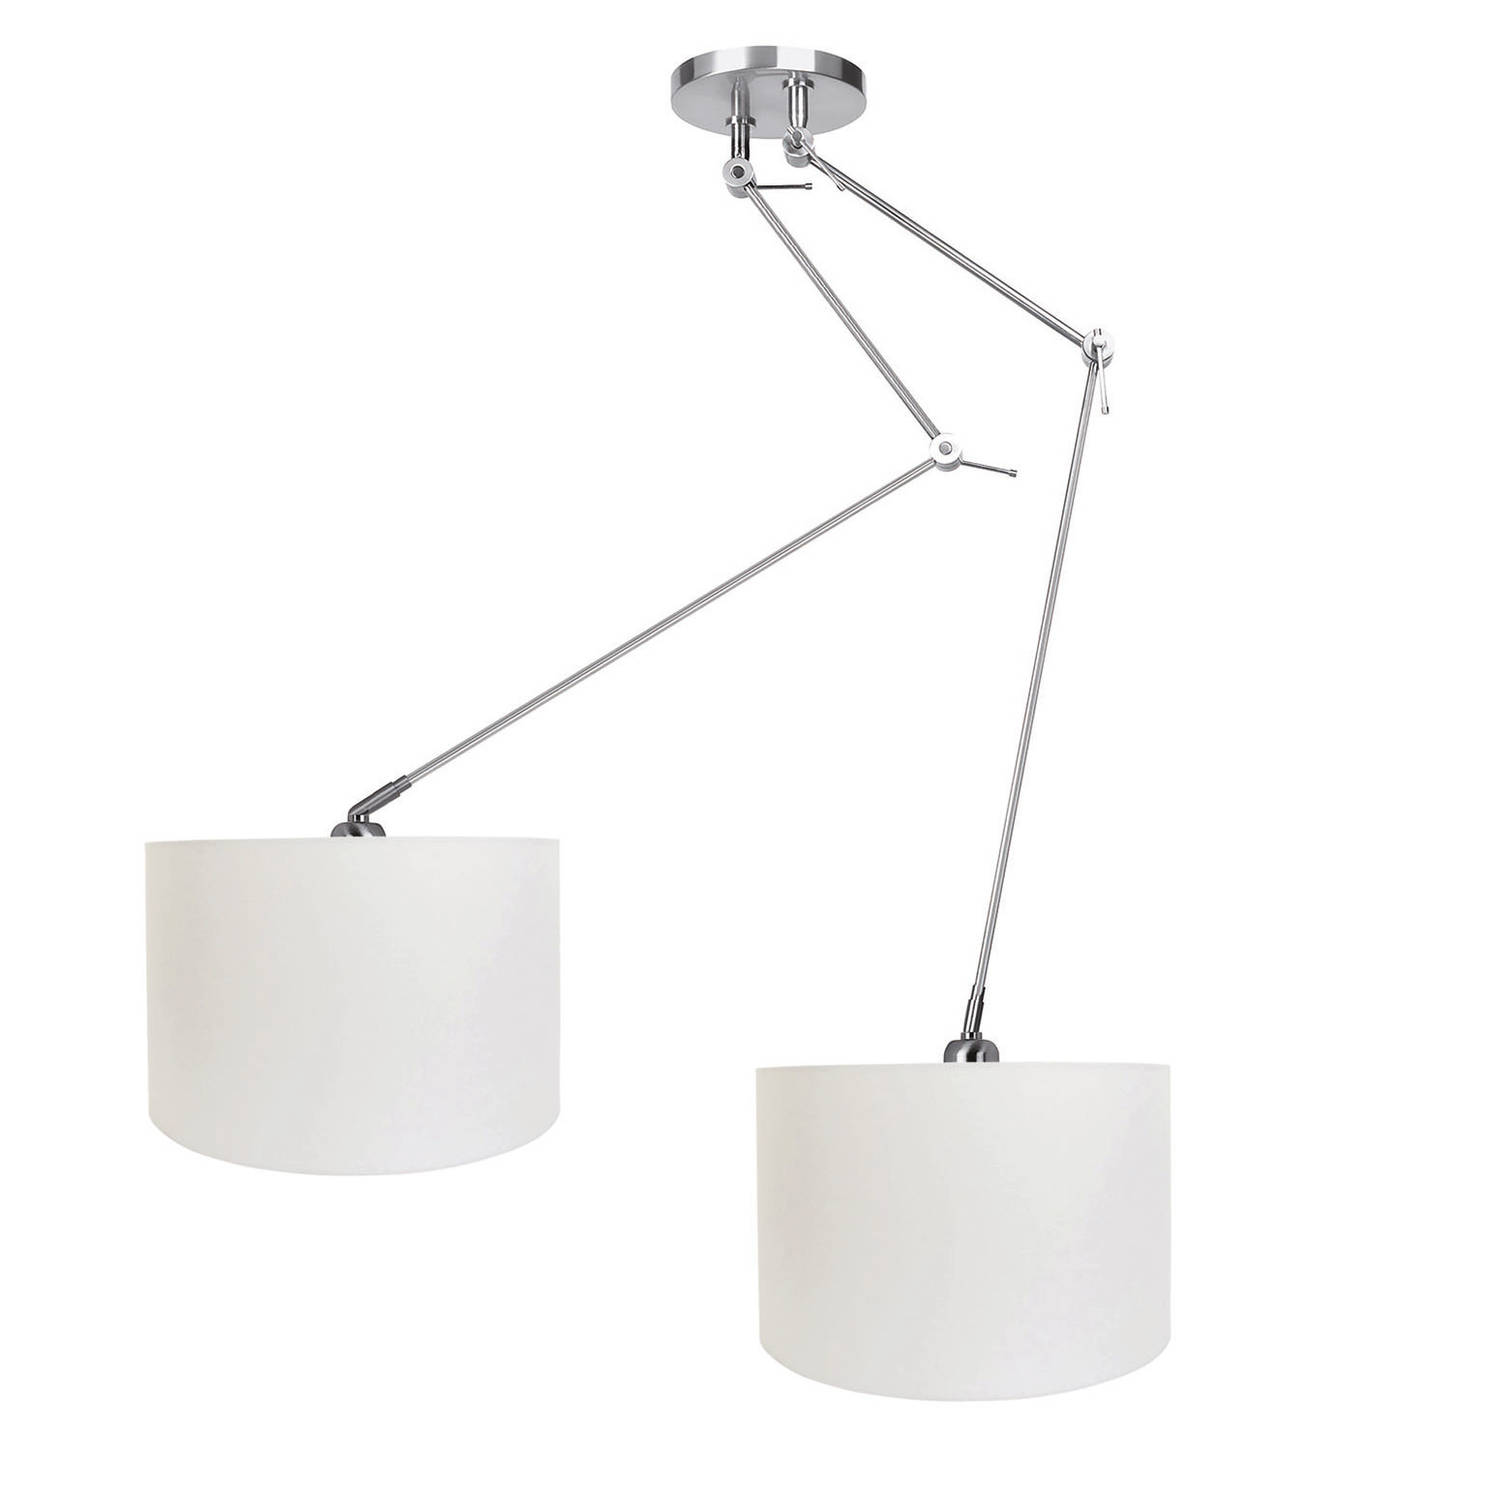 Ylumen Hanglamp Knik 2 lichts met witte kappen Ø 40 cm mat chroom